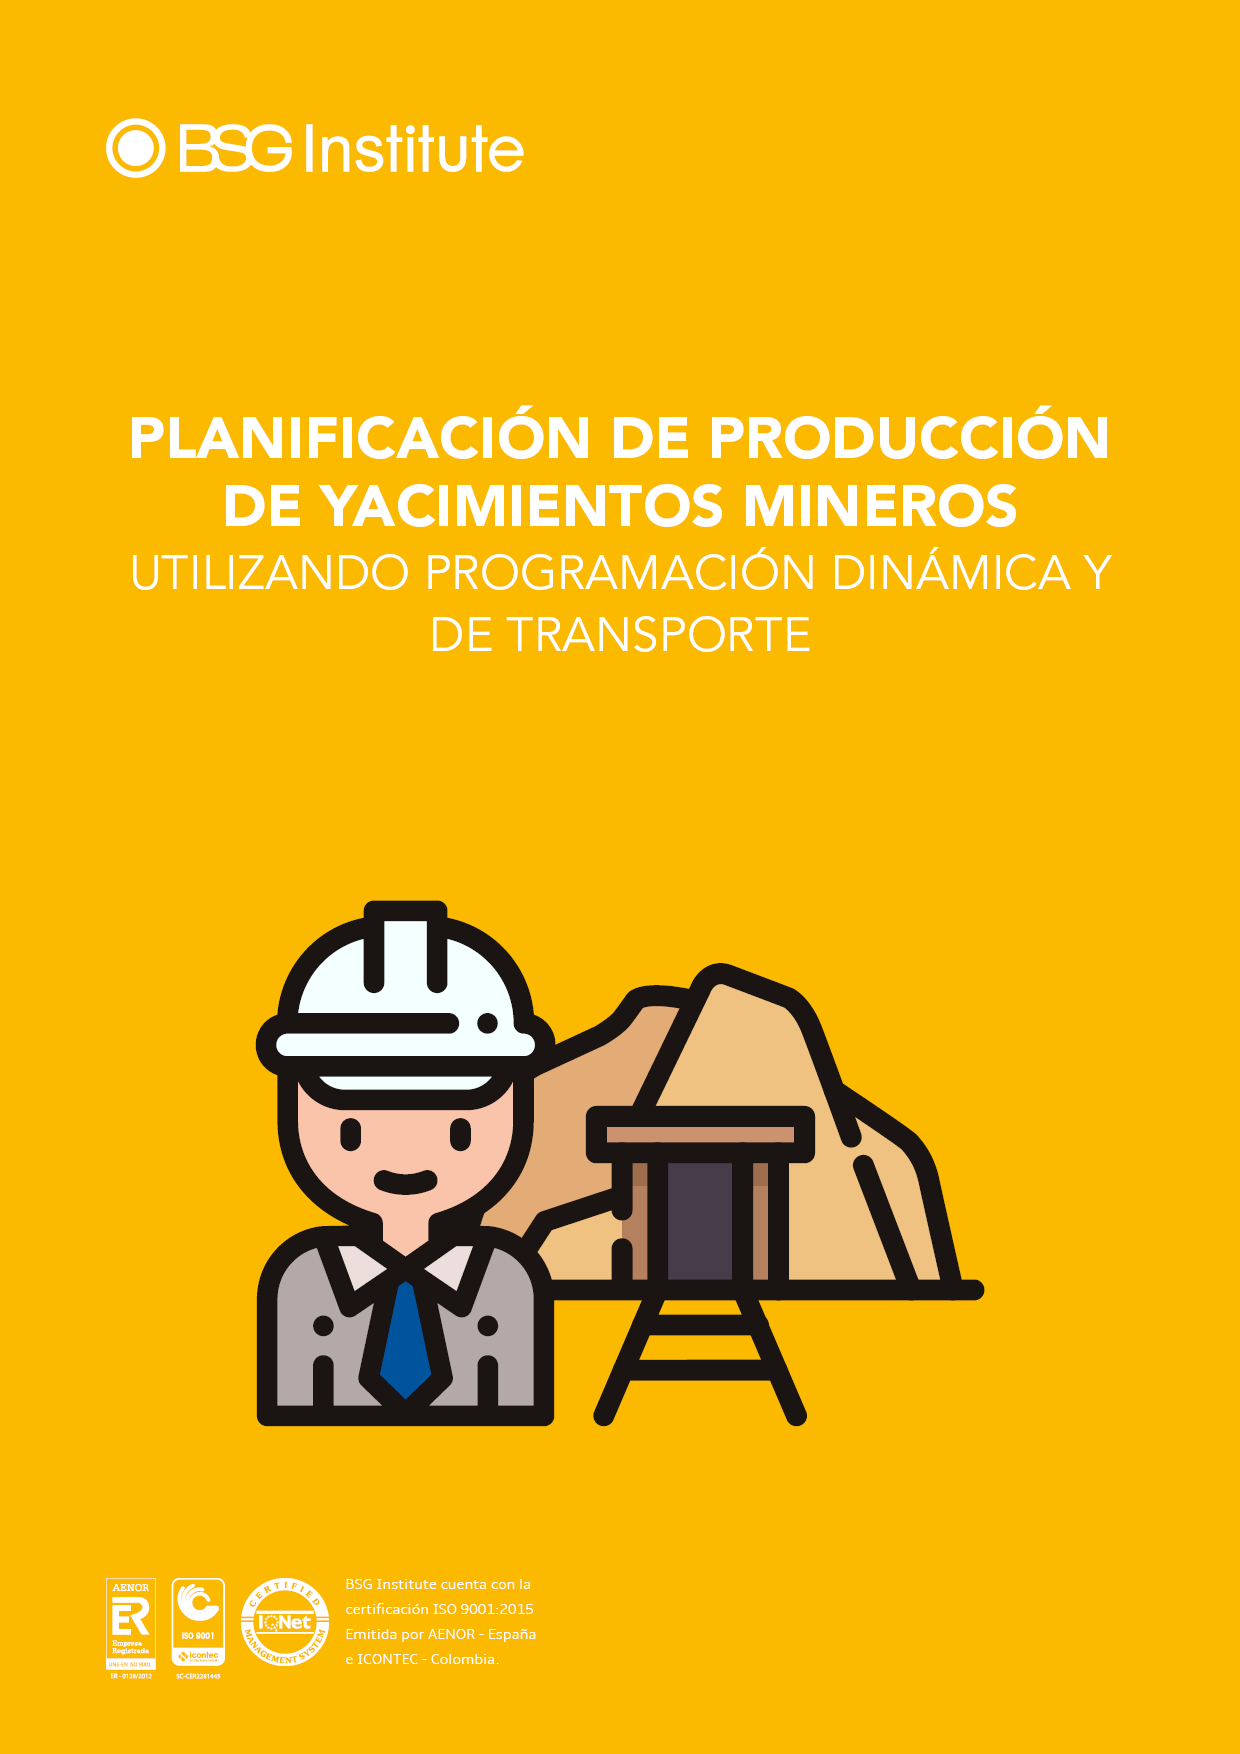 Planificación de Producción de Yacimientos Mineros utilizando Programación Dinámica y de Transporte